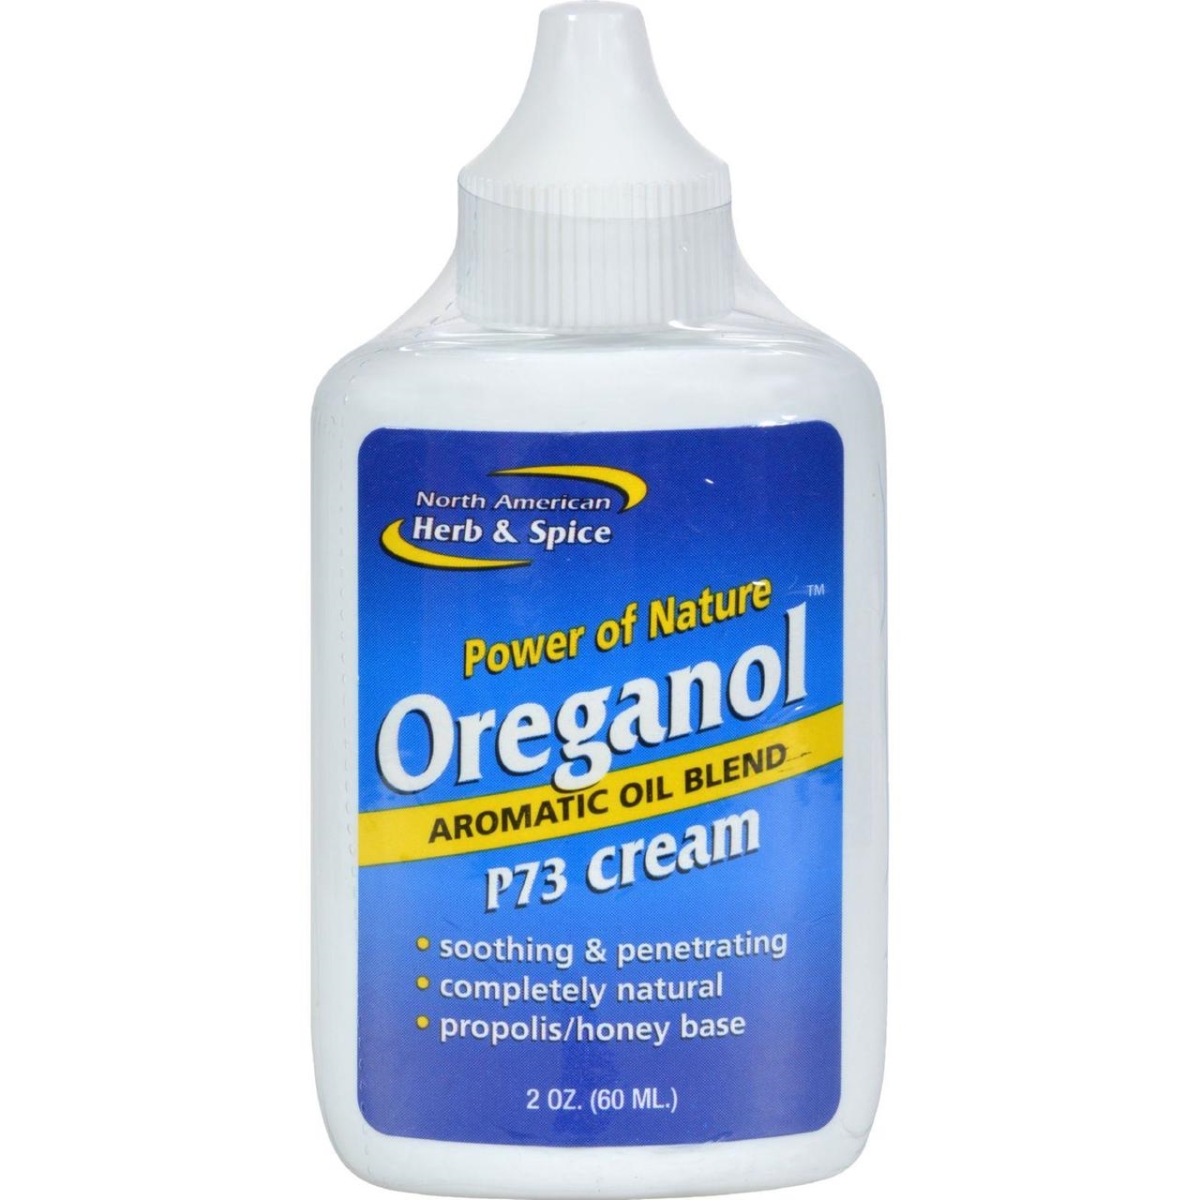 Hg0647776 2 Oz Oreganol Oil Of Oregano Cream